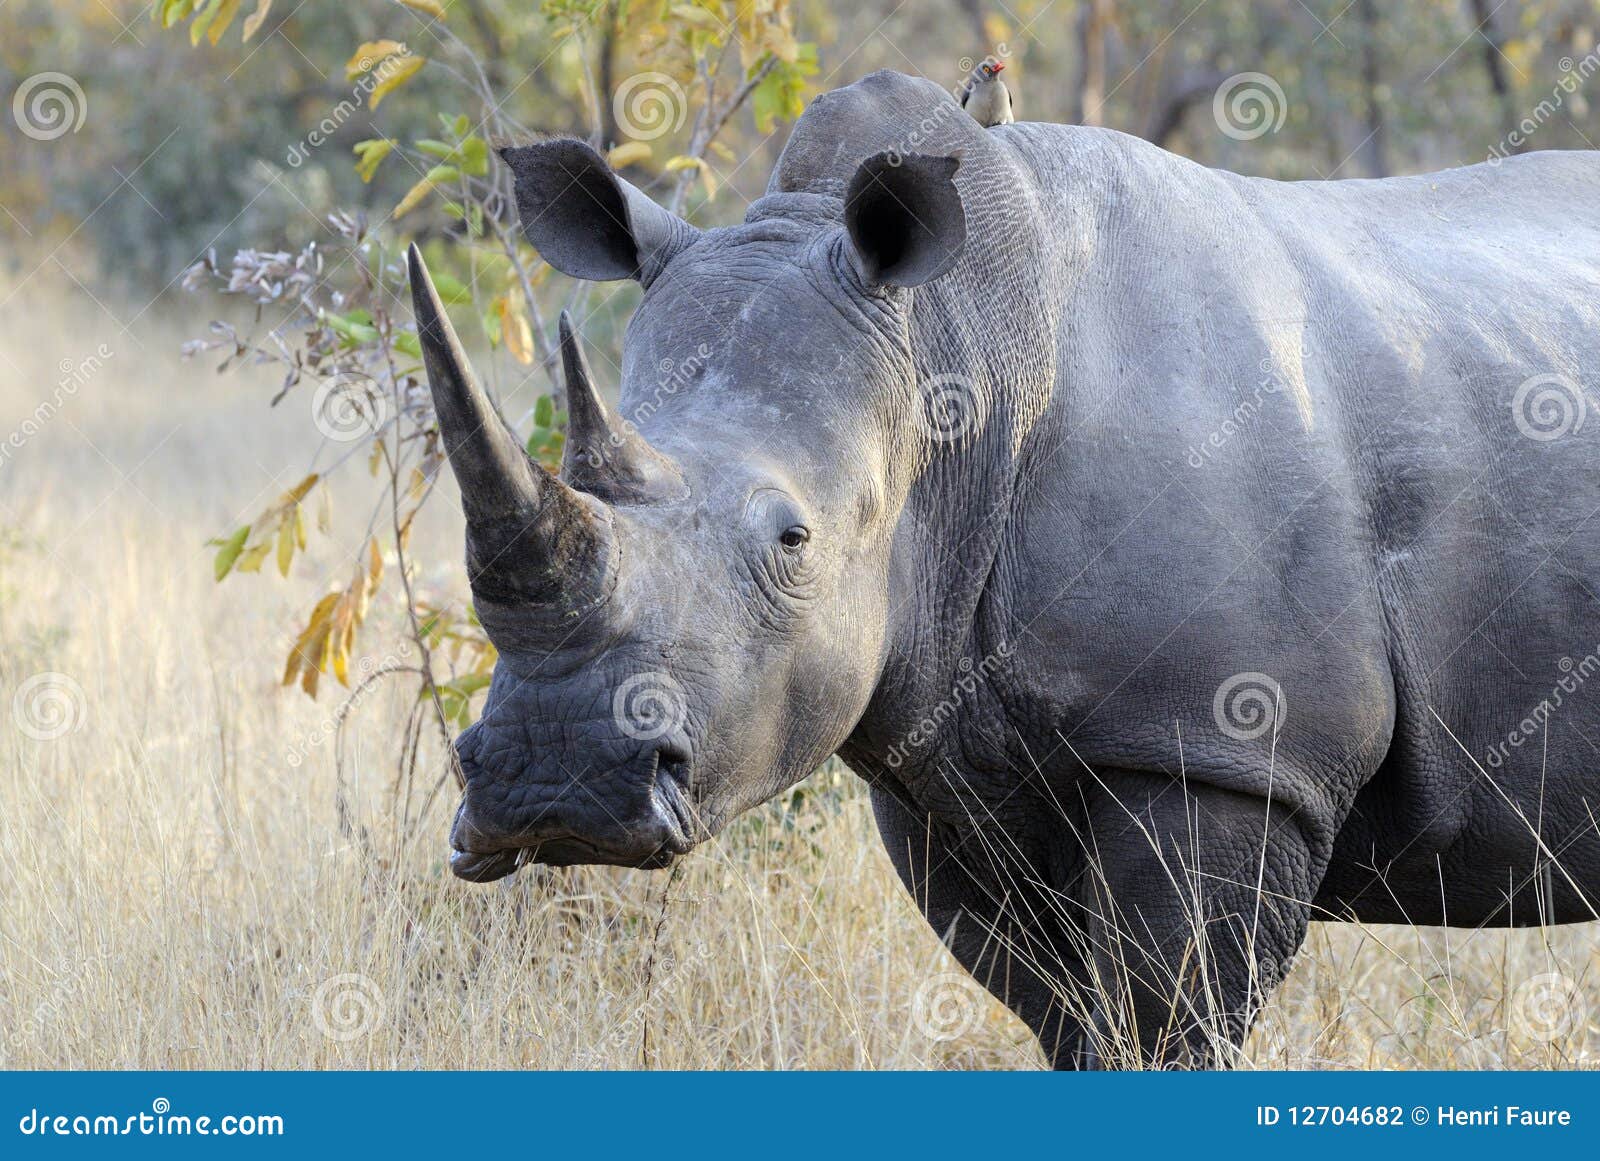 huge male rhino